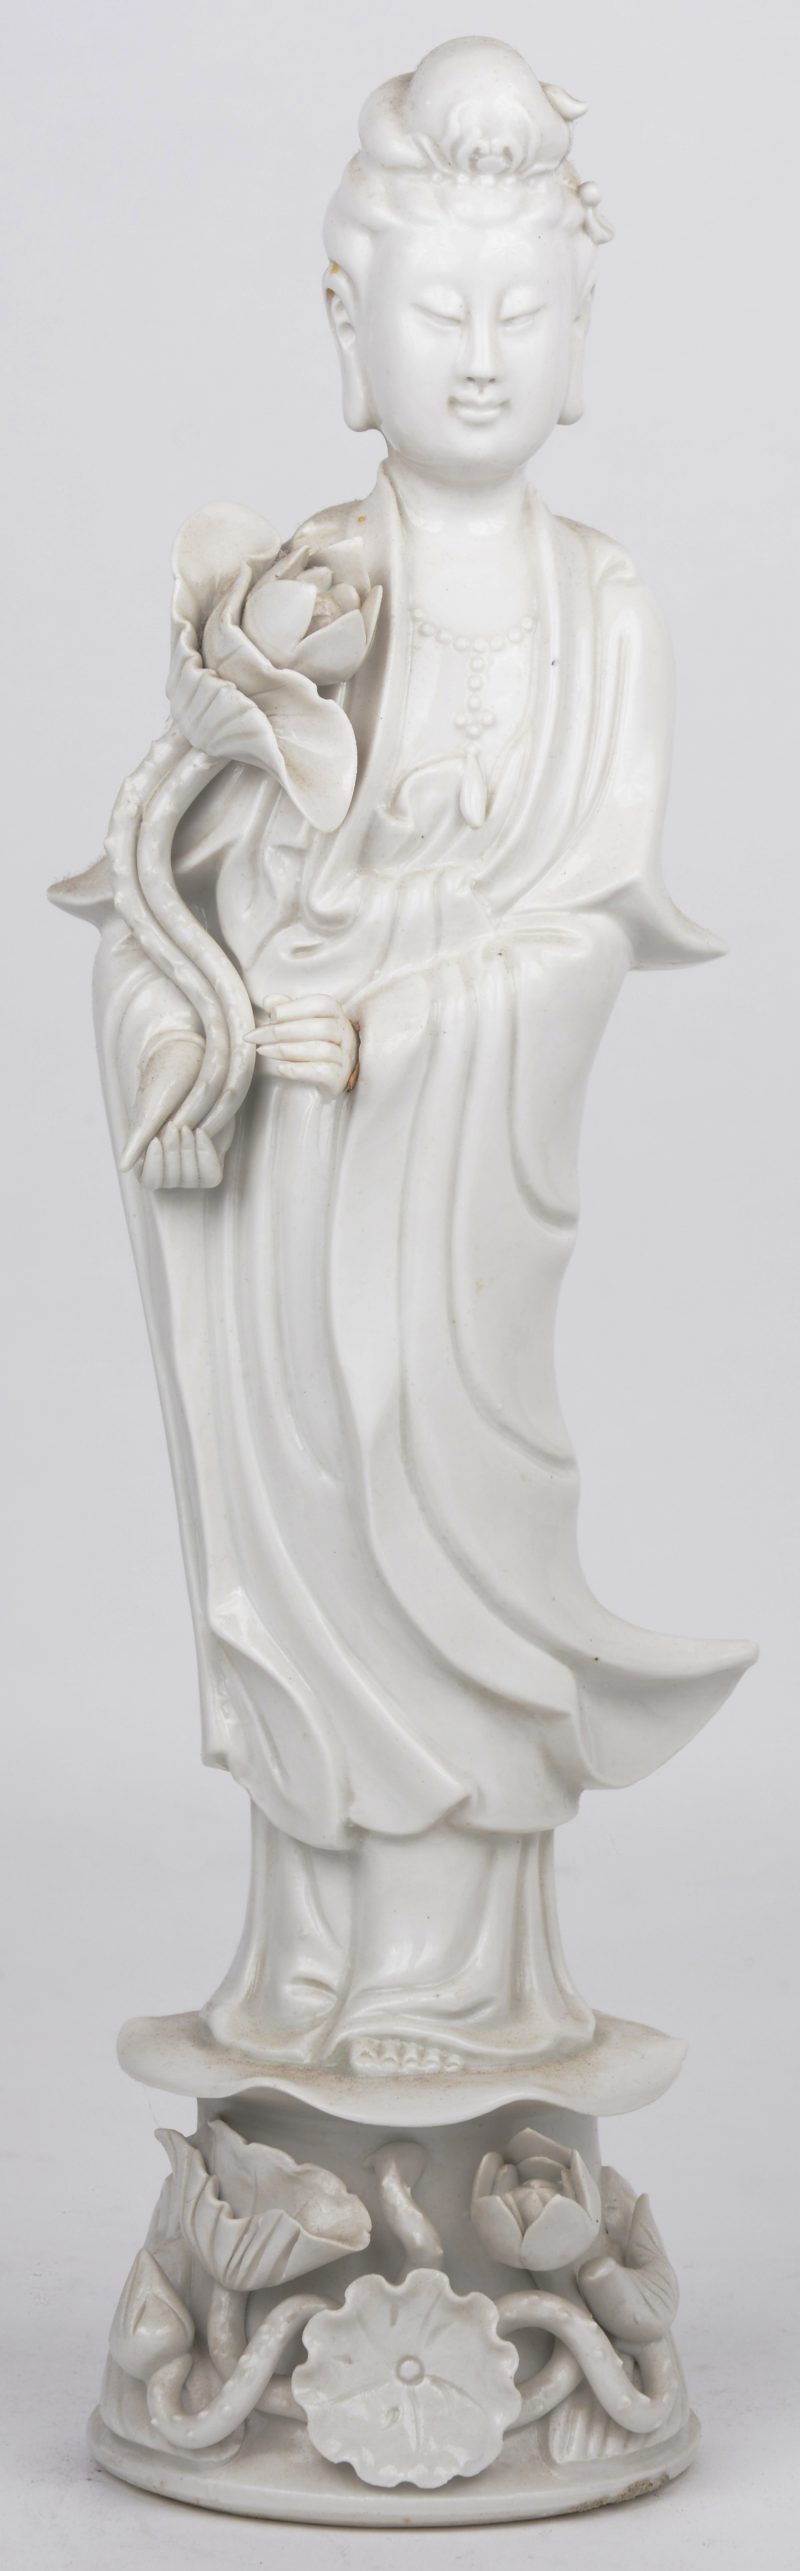 Een staande Guan Yin van monochroom wit porselein.